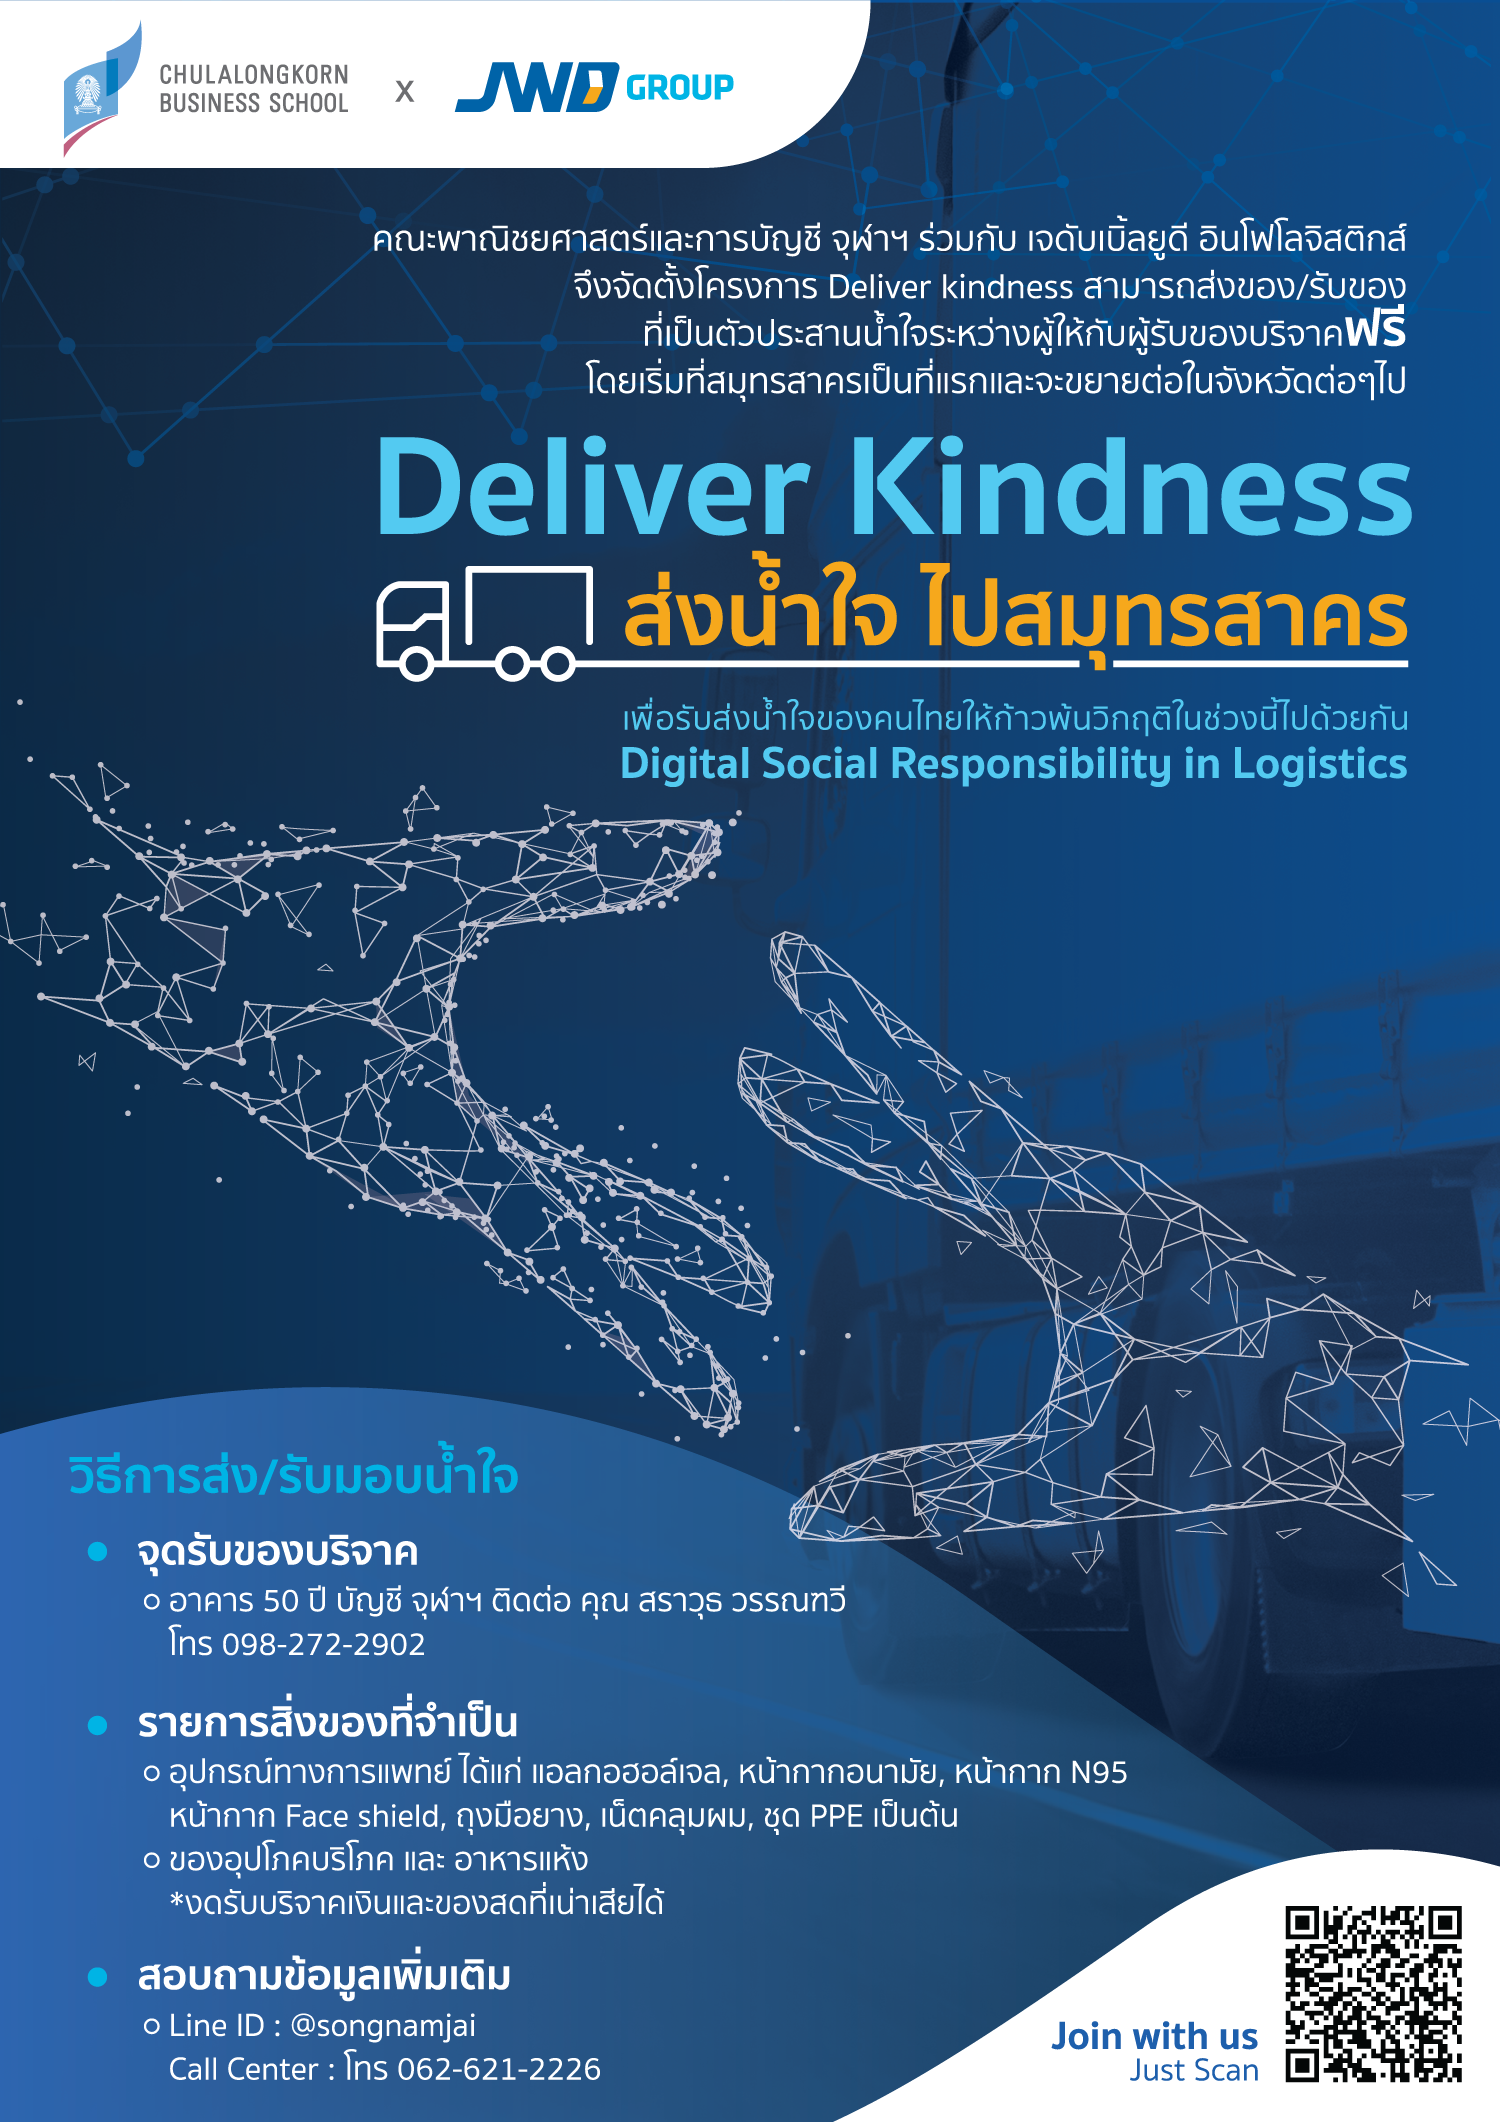 JWD x คณะพาณิชยศาสตร์และการบัญชี จุฬาฯ  เปิดตัวโครงการ 'Deliver Kindness' ส่งน้ำใจไป จ.สมุทรสาคร ร่วมก้าวผ่าน COVID-19